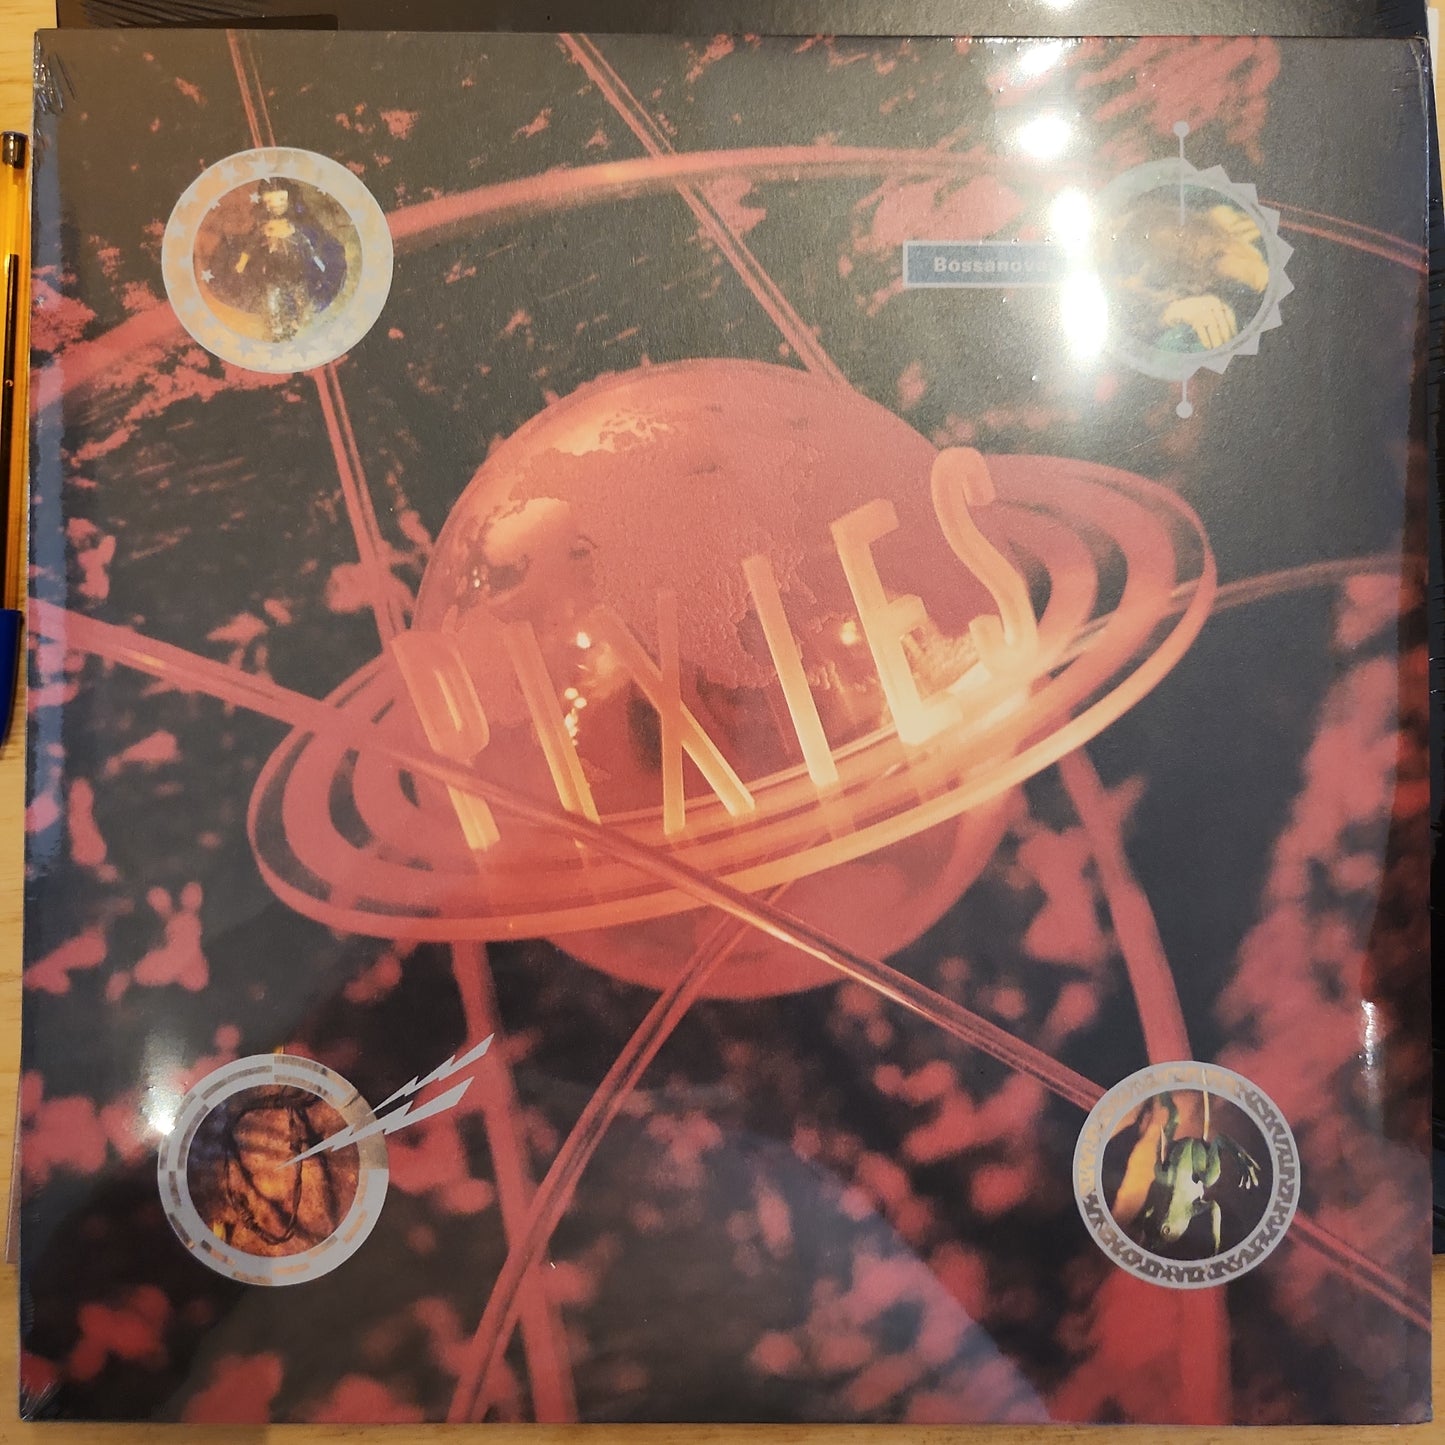 Pixies - Bossanova - Vinyl Lp